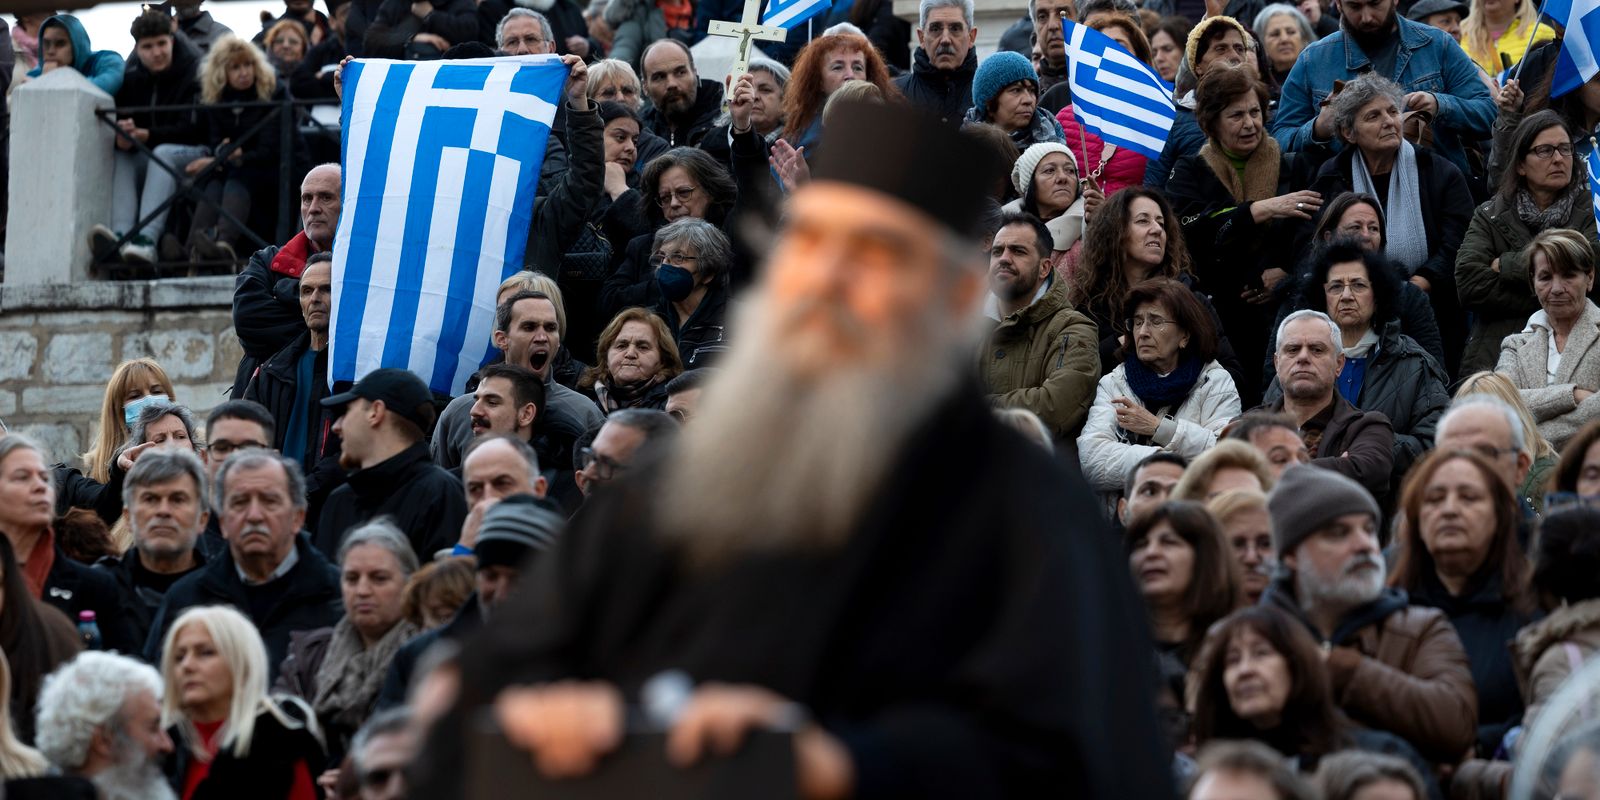 grekisk kyrka rasar mot samkönade äktenskap